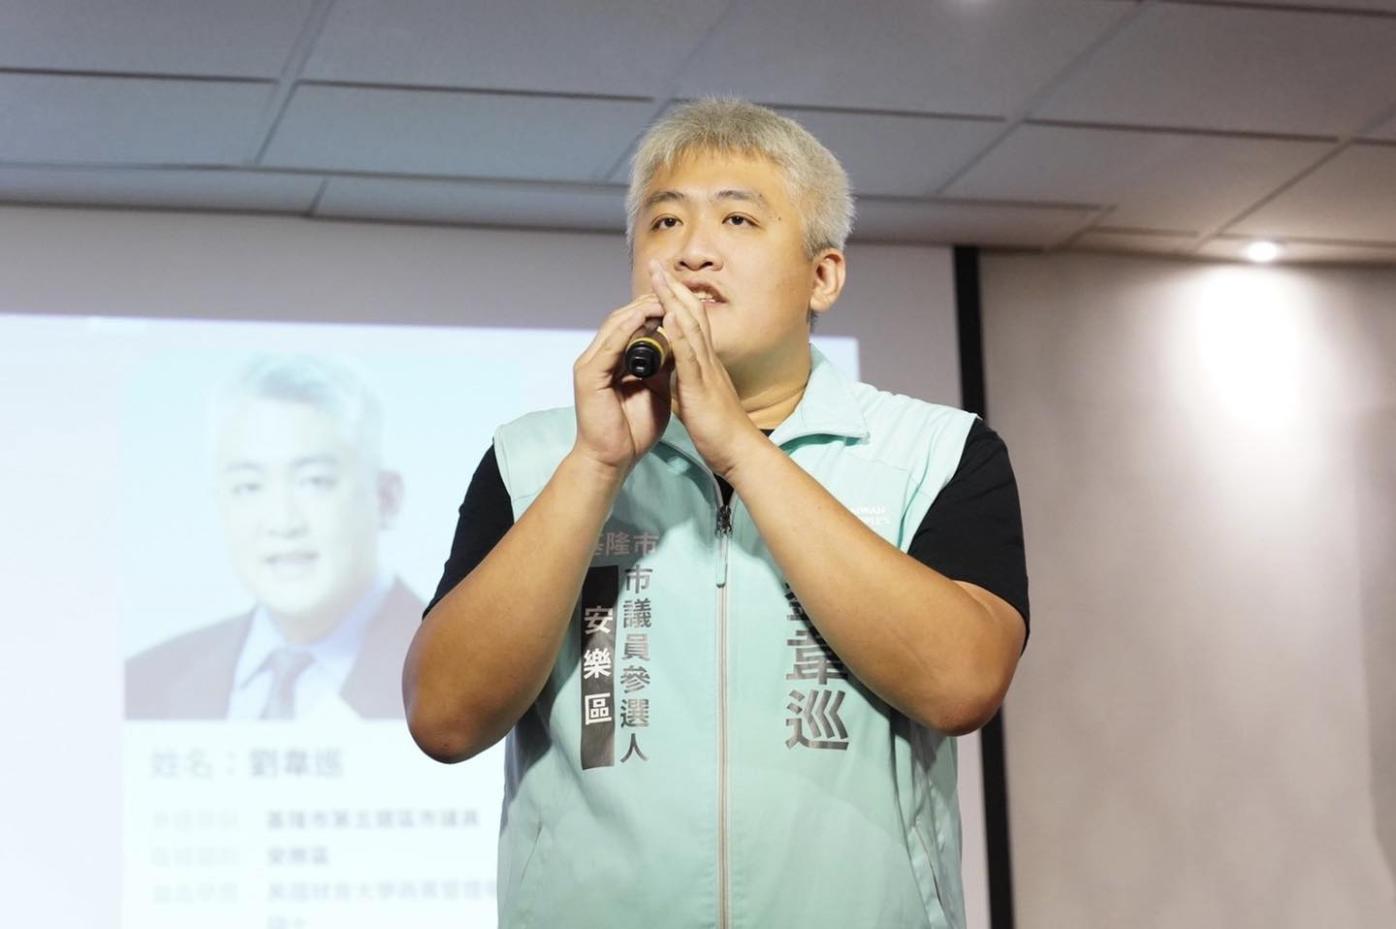 民眾黨基隆區部主任劉韋巡宣布退黨。翻攝劉韋巡臉書